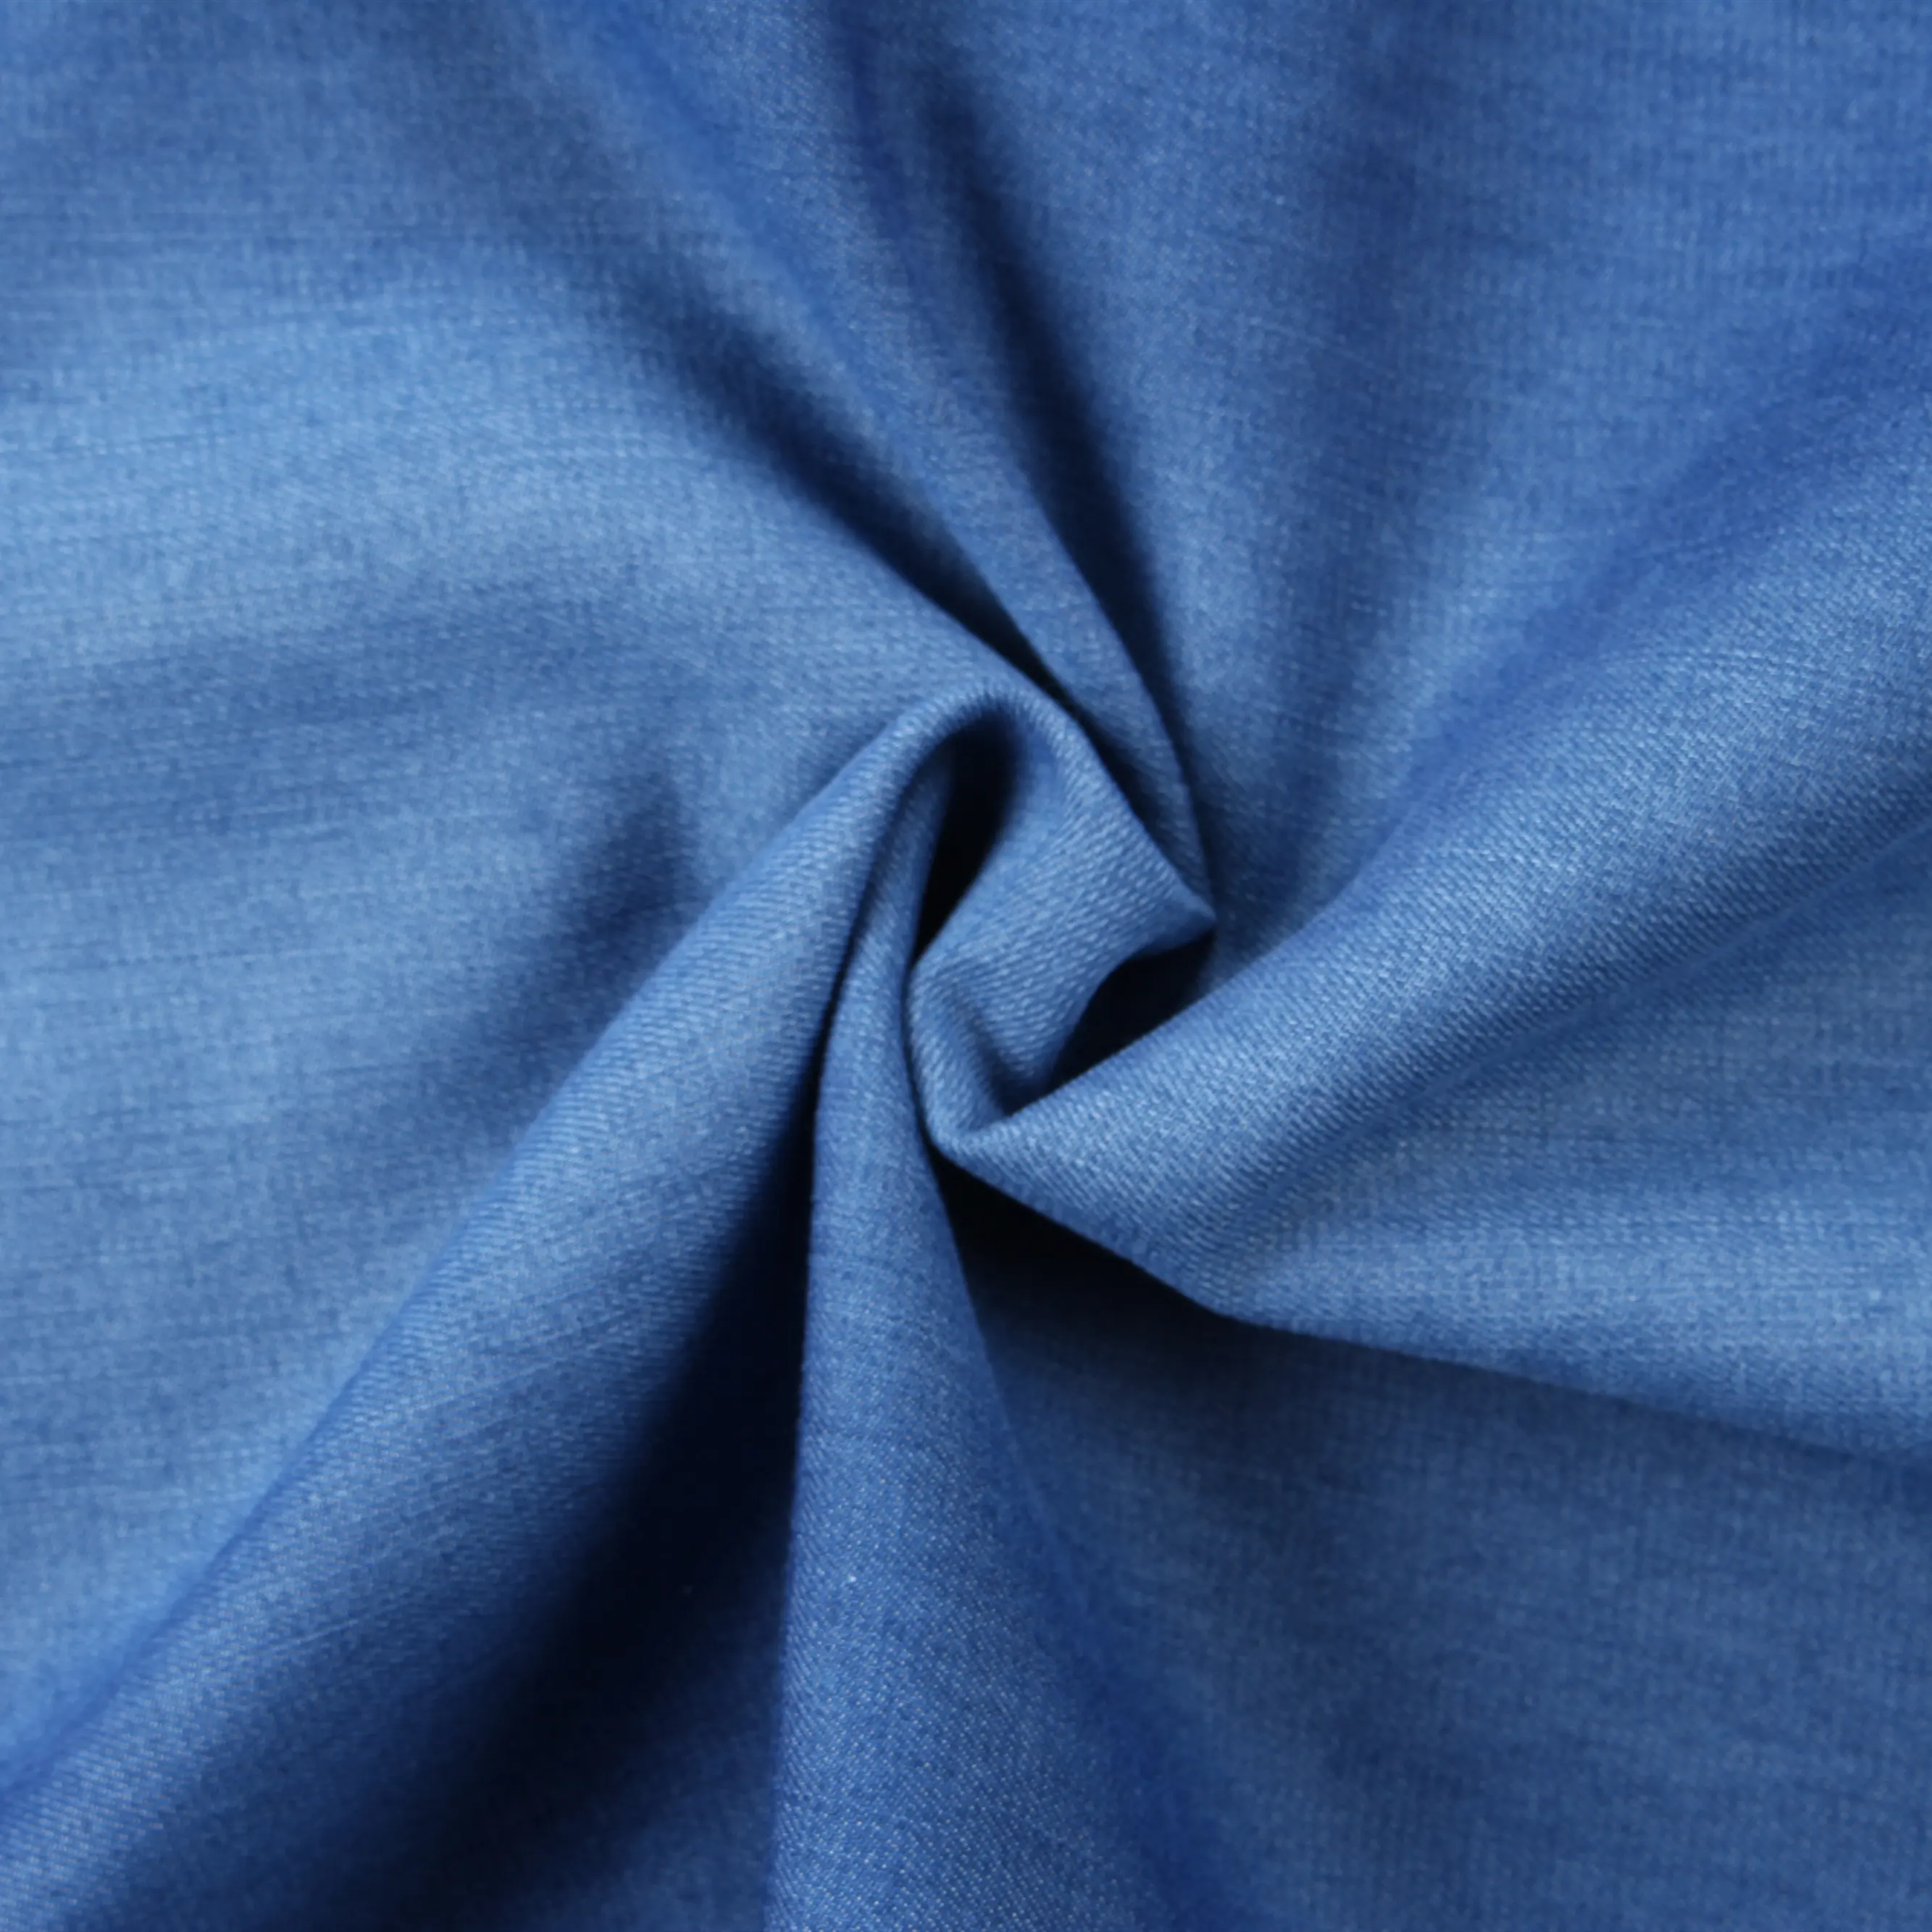 5.5 Oz Indigo Blueสีเทาผ้าฝ้ายModal Denimผ้าสำหรับเสื้อชุดกระโปรงกางเกงยีนส์